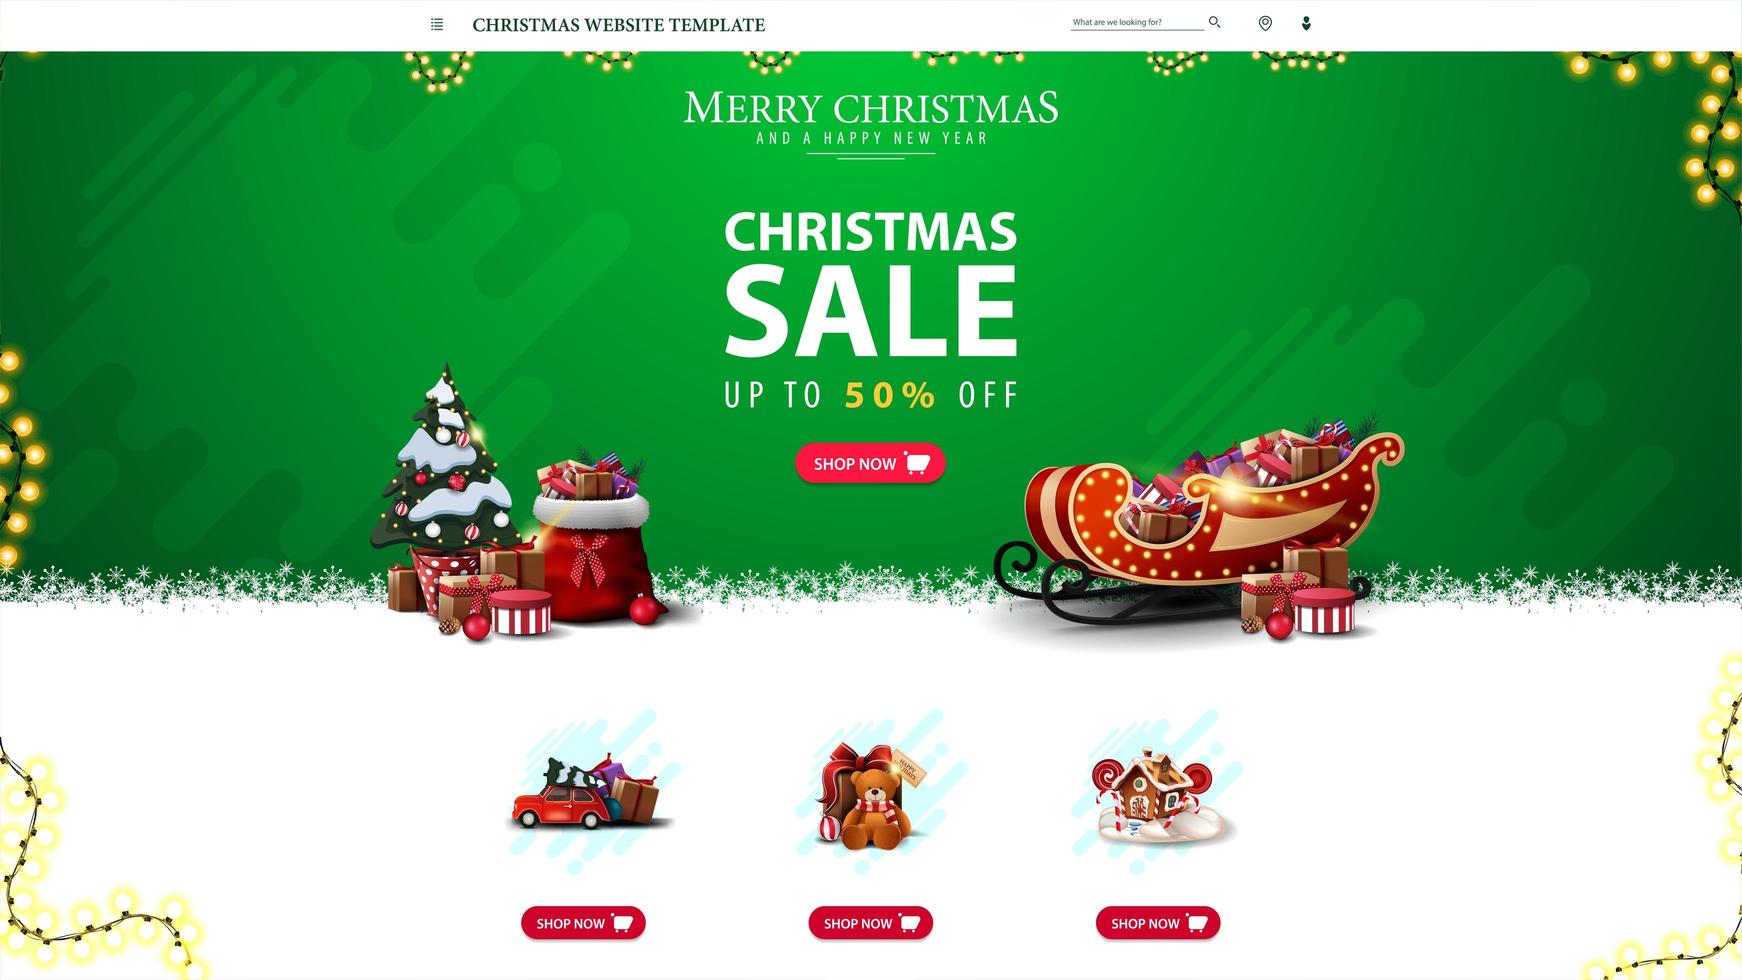 Weihnachtswebsite-Vorlage mit Rabattangebot, grünes Weihnachtswebsite-Design für Ihre Kreativität vektor